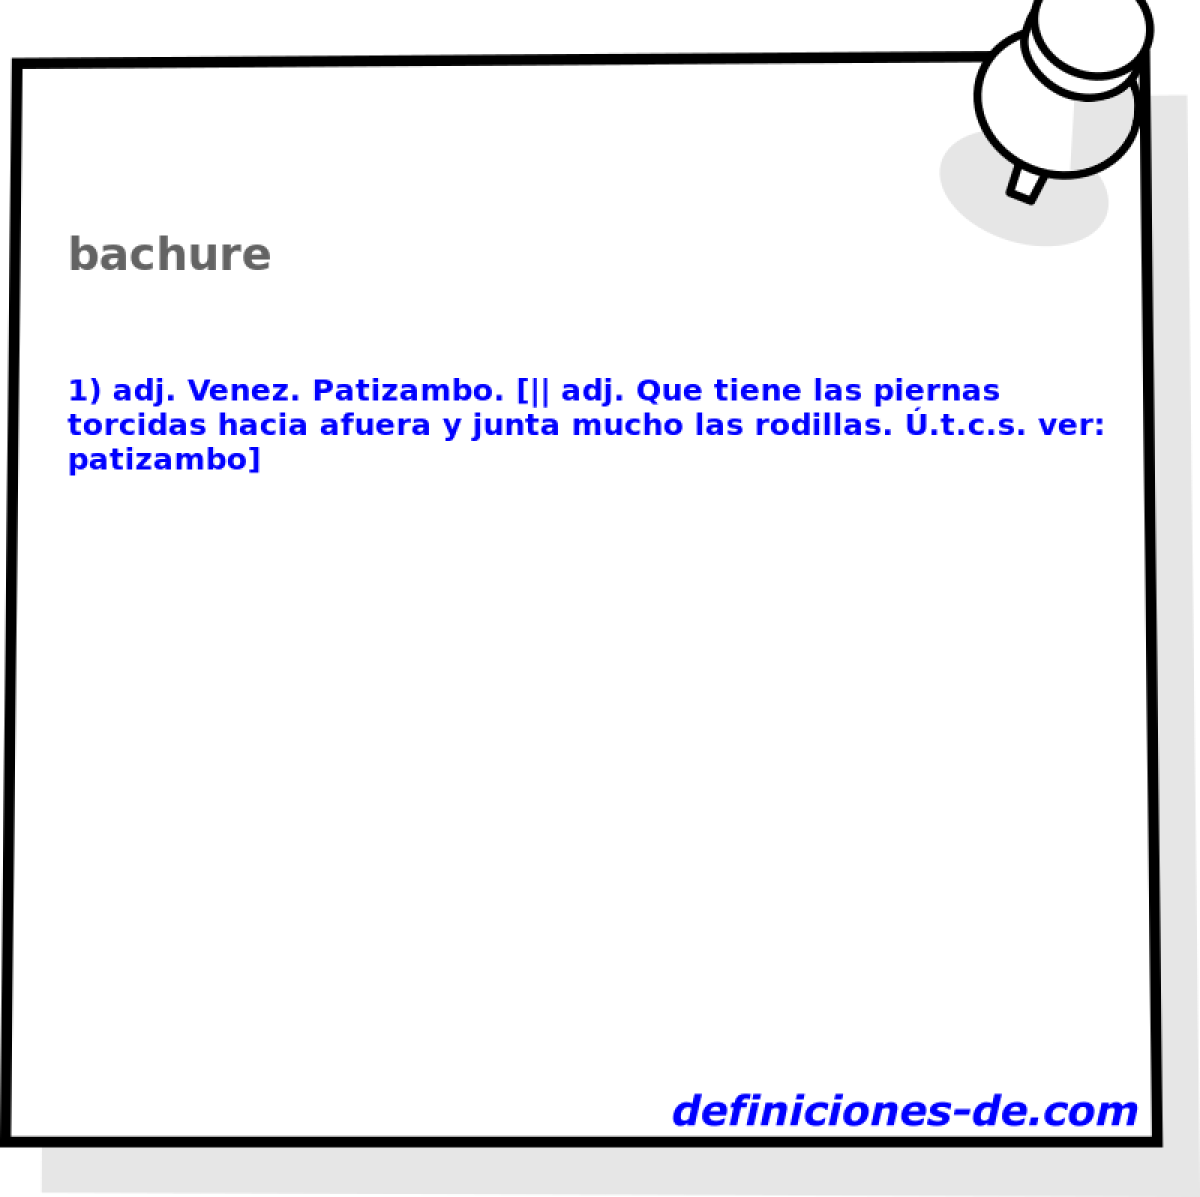 bachure 